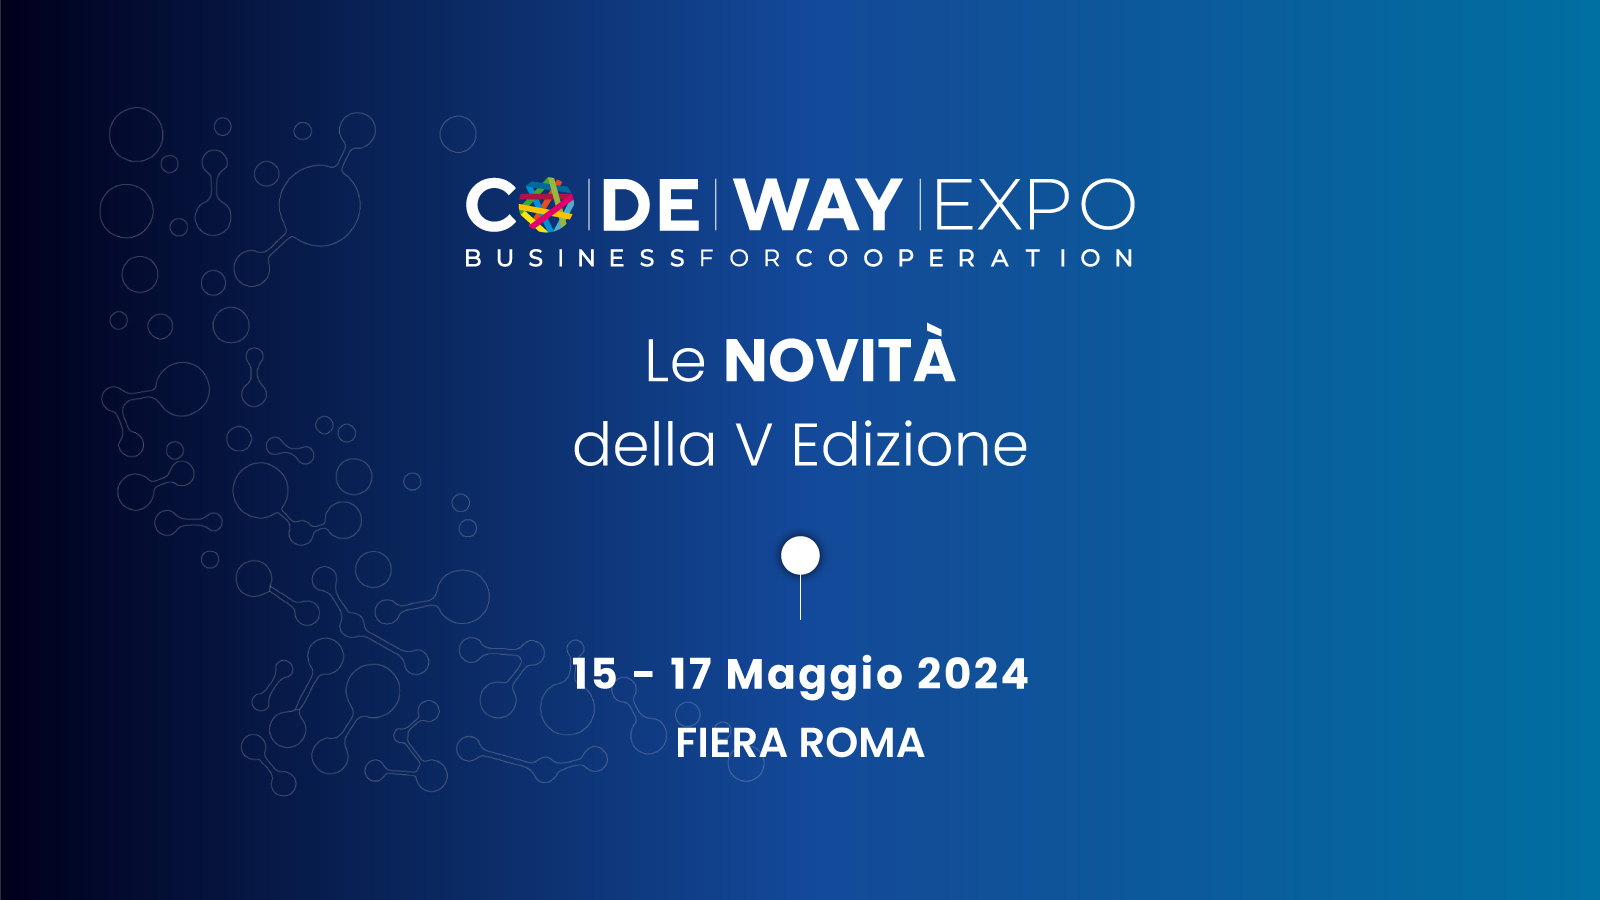 Il centro d’affari tuniso italiano Delta Center promuoverà l’evento Codeway Expo 2024 sui mercati esteri, in particolare Tunisia e Libia